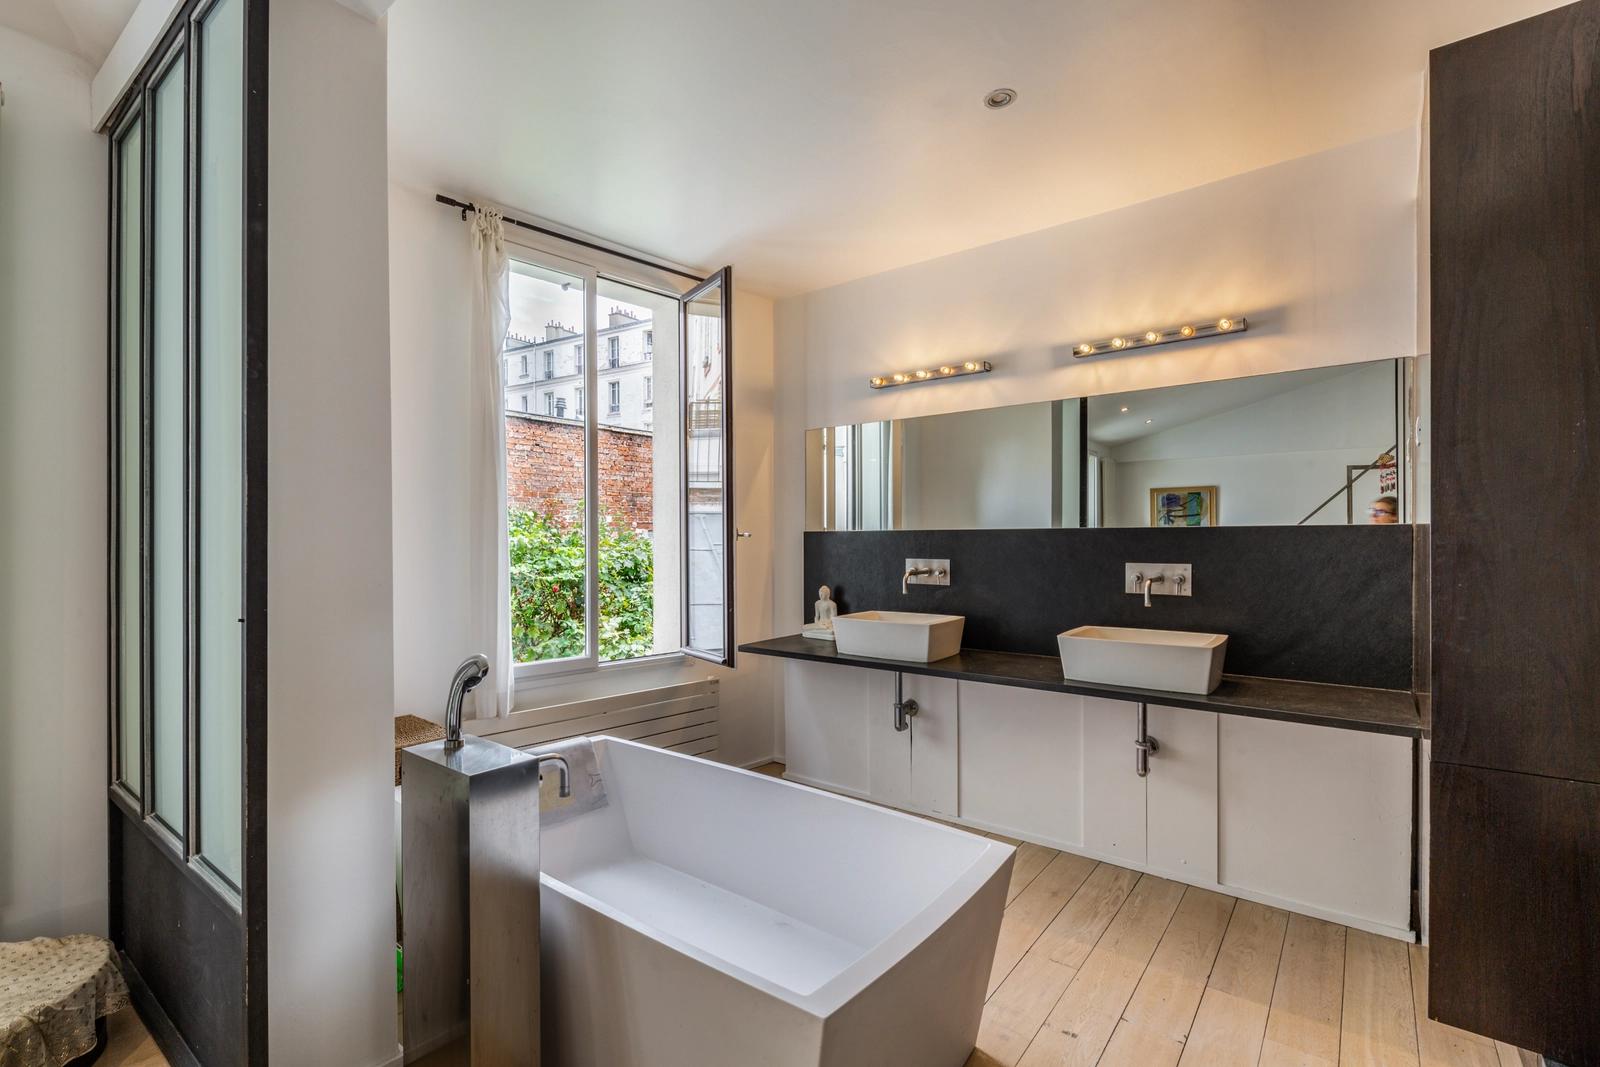 Cuarto de baño dentro Una casa con terraza diseñada por un arquitecto en París - 1